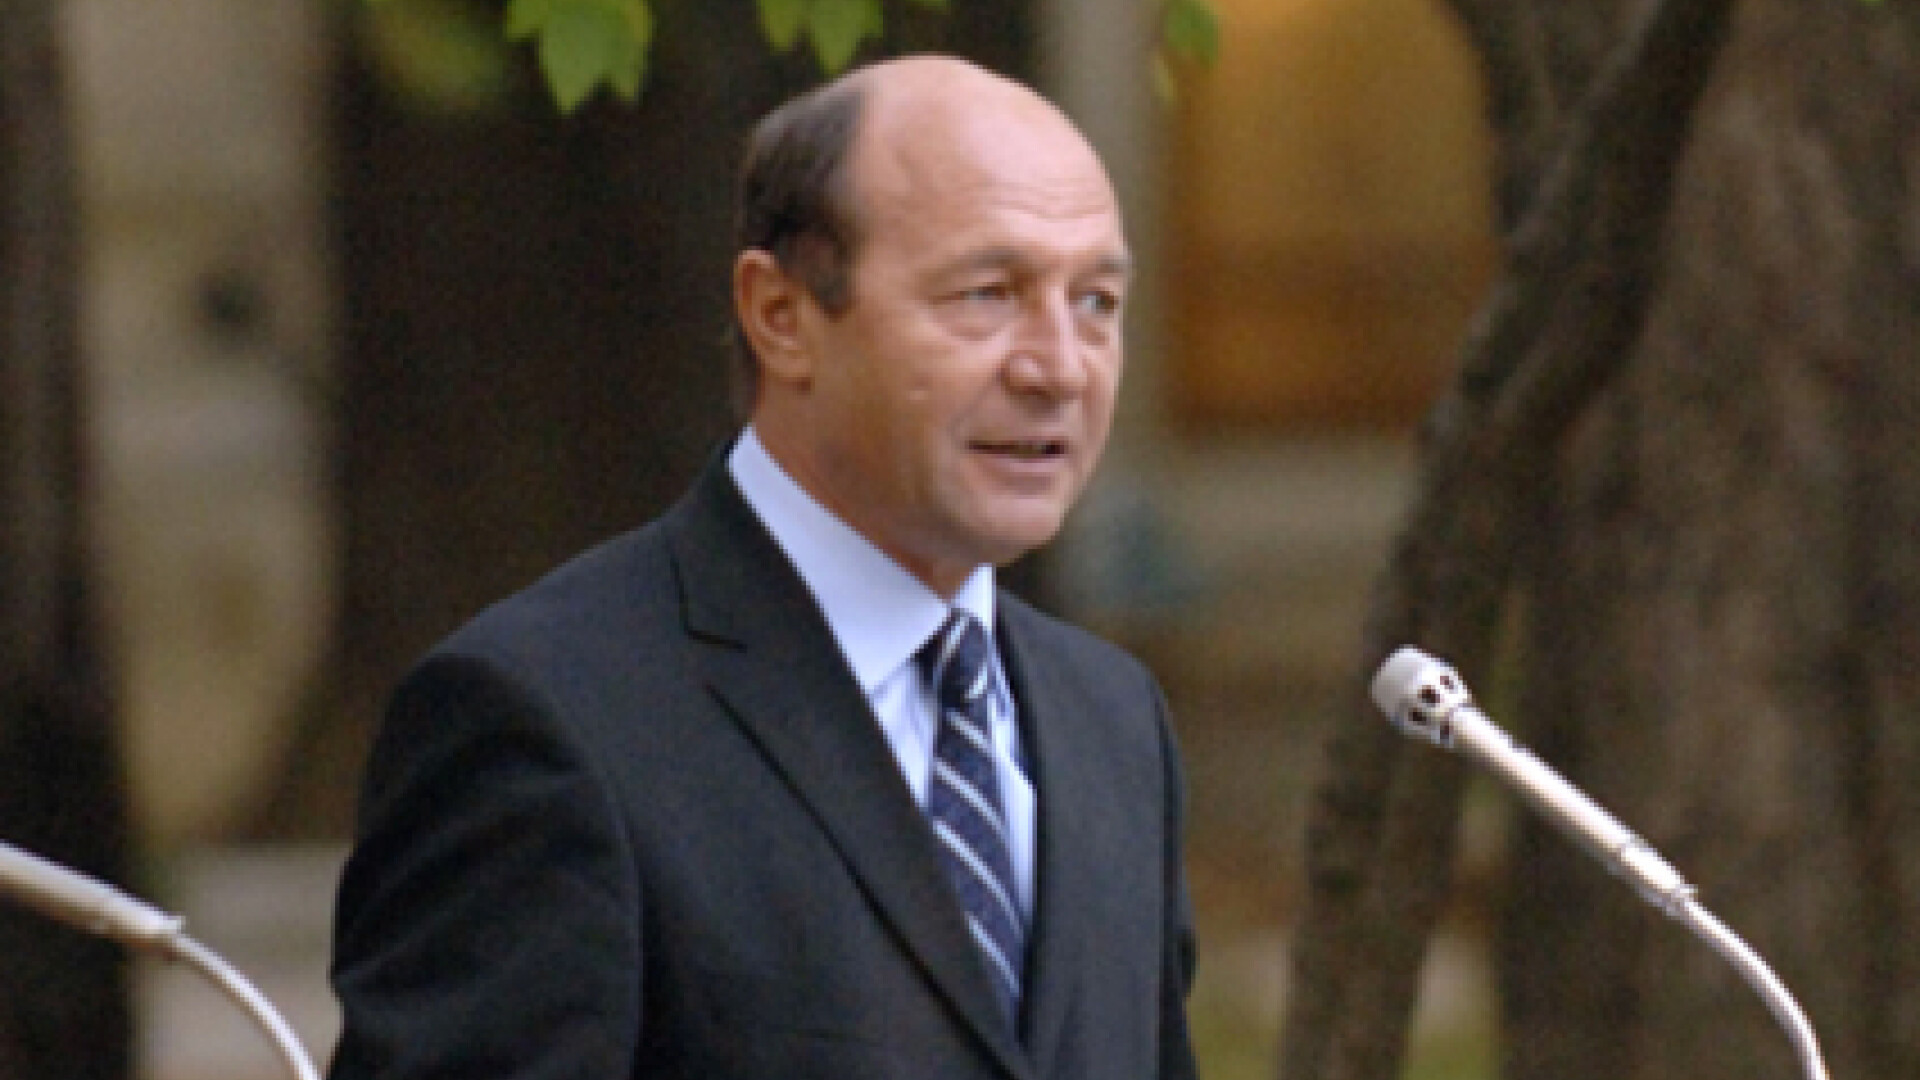 Basescu le-a sugerat oamenilor de afaceri din Coreea sa investeasca in Romania